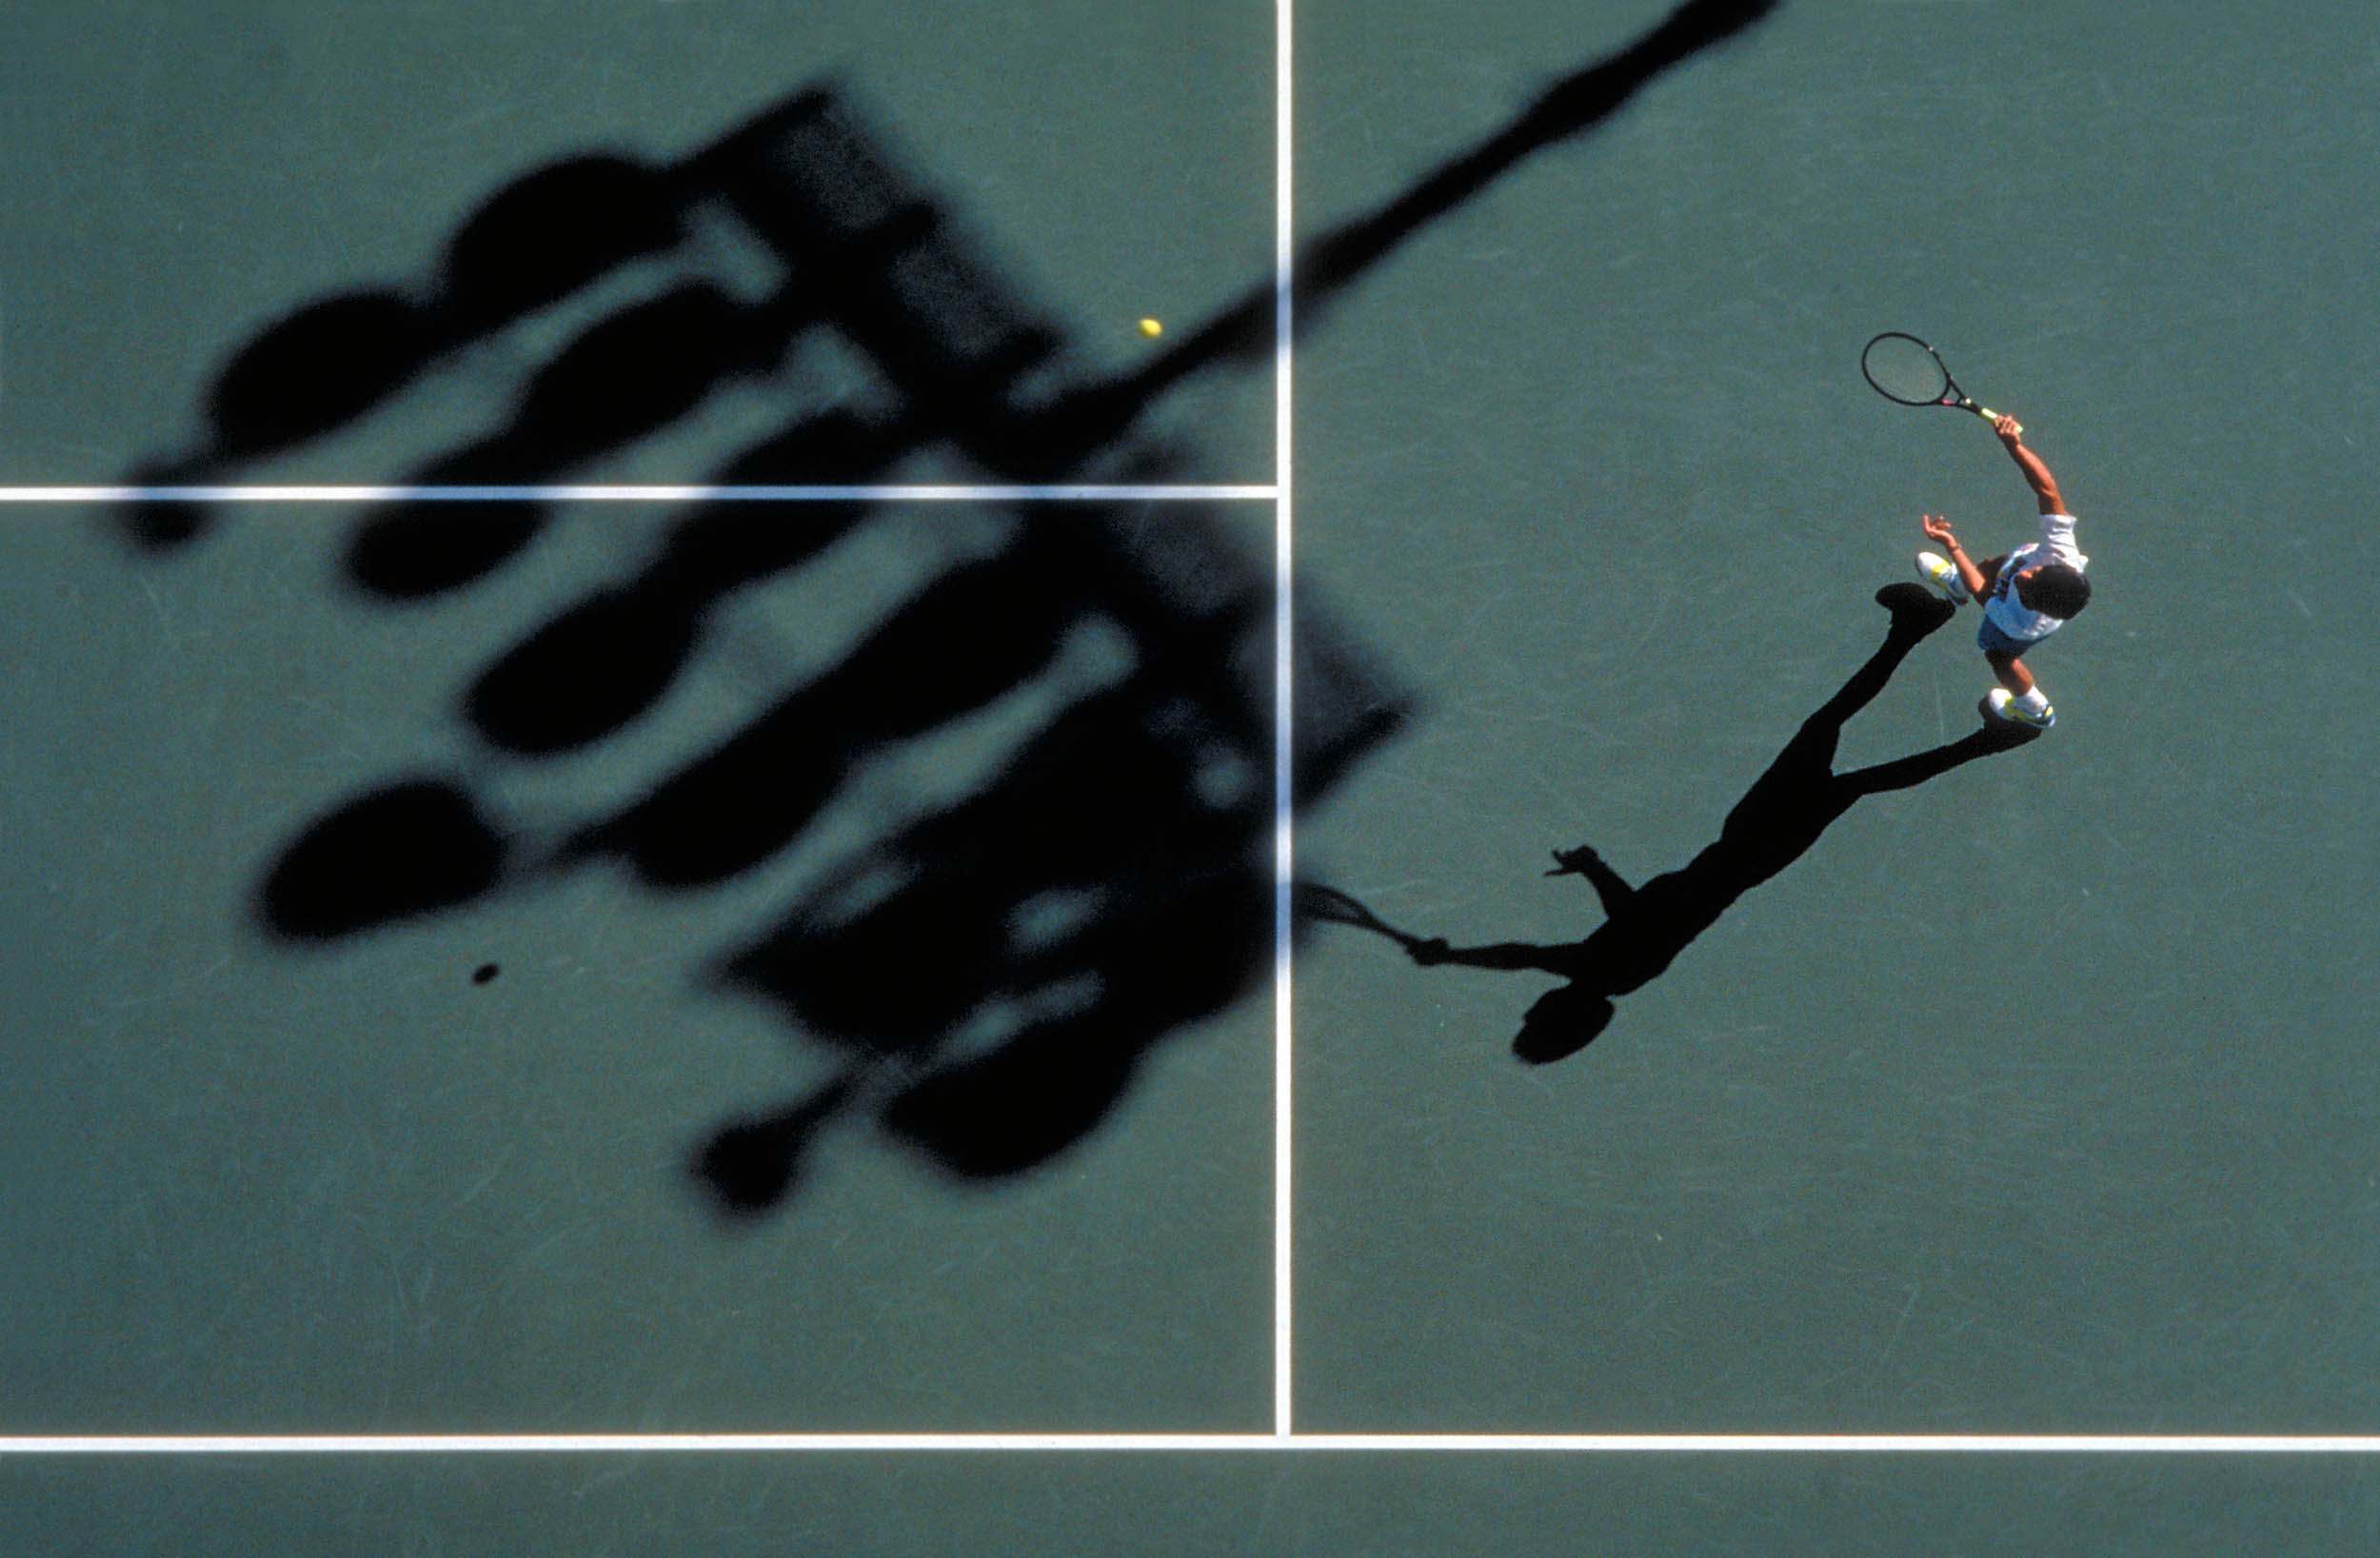 Tennisplatz 029 v o Chang bb_shp_schaerfer2500px.jpg